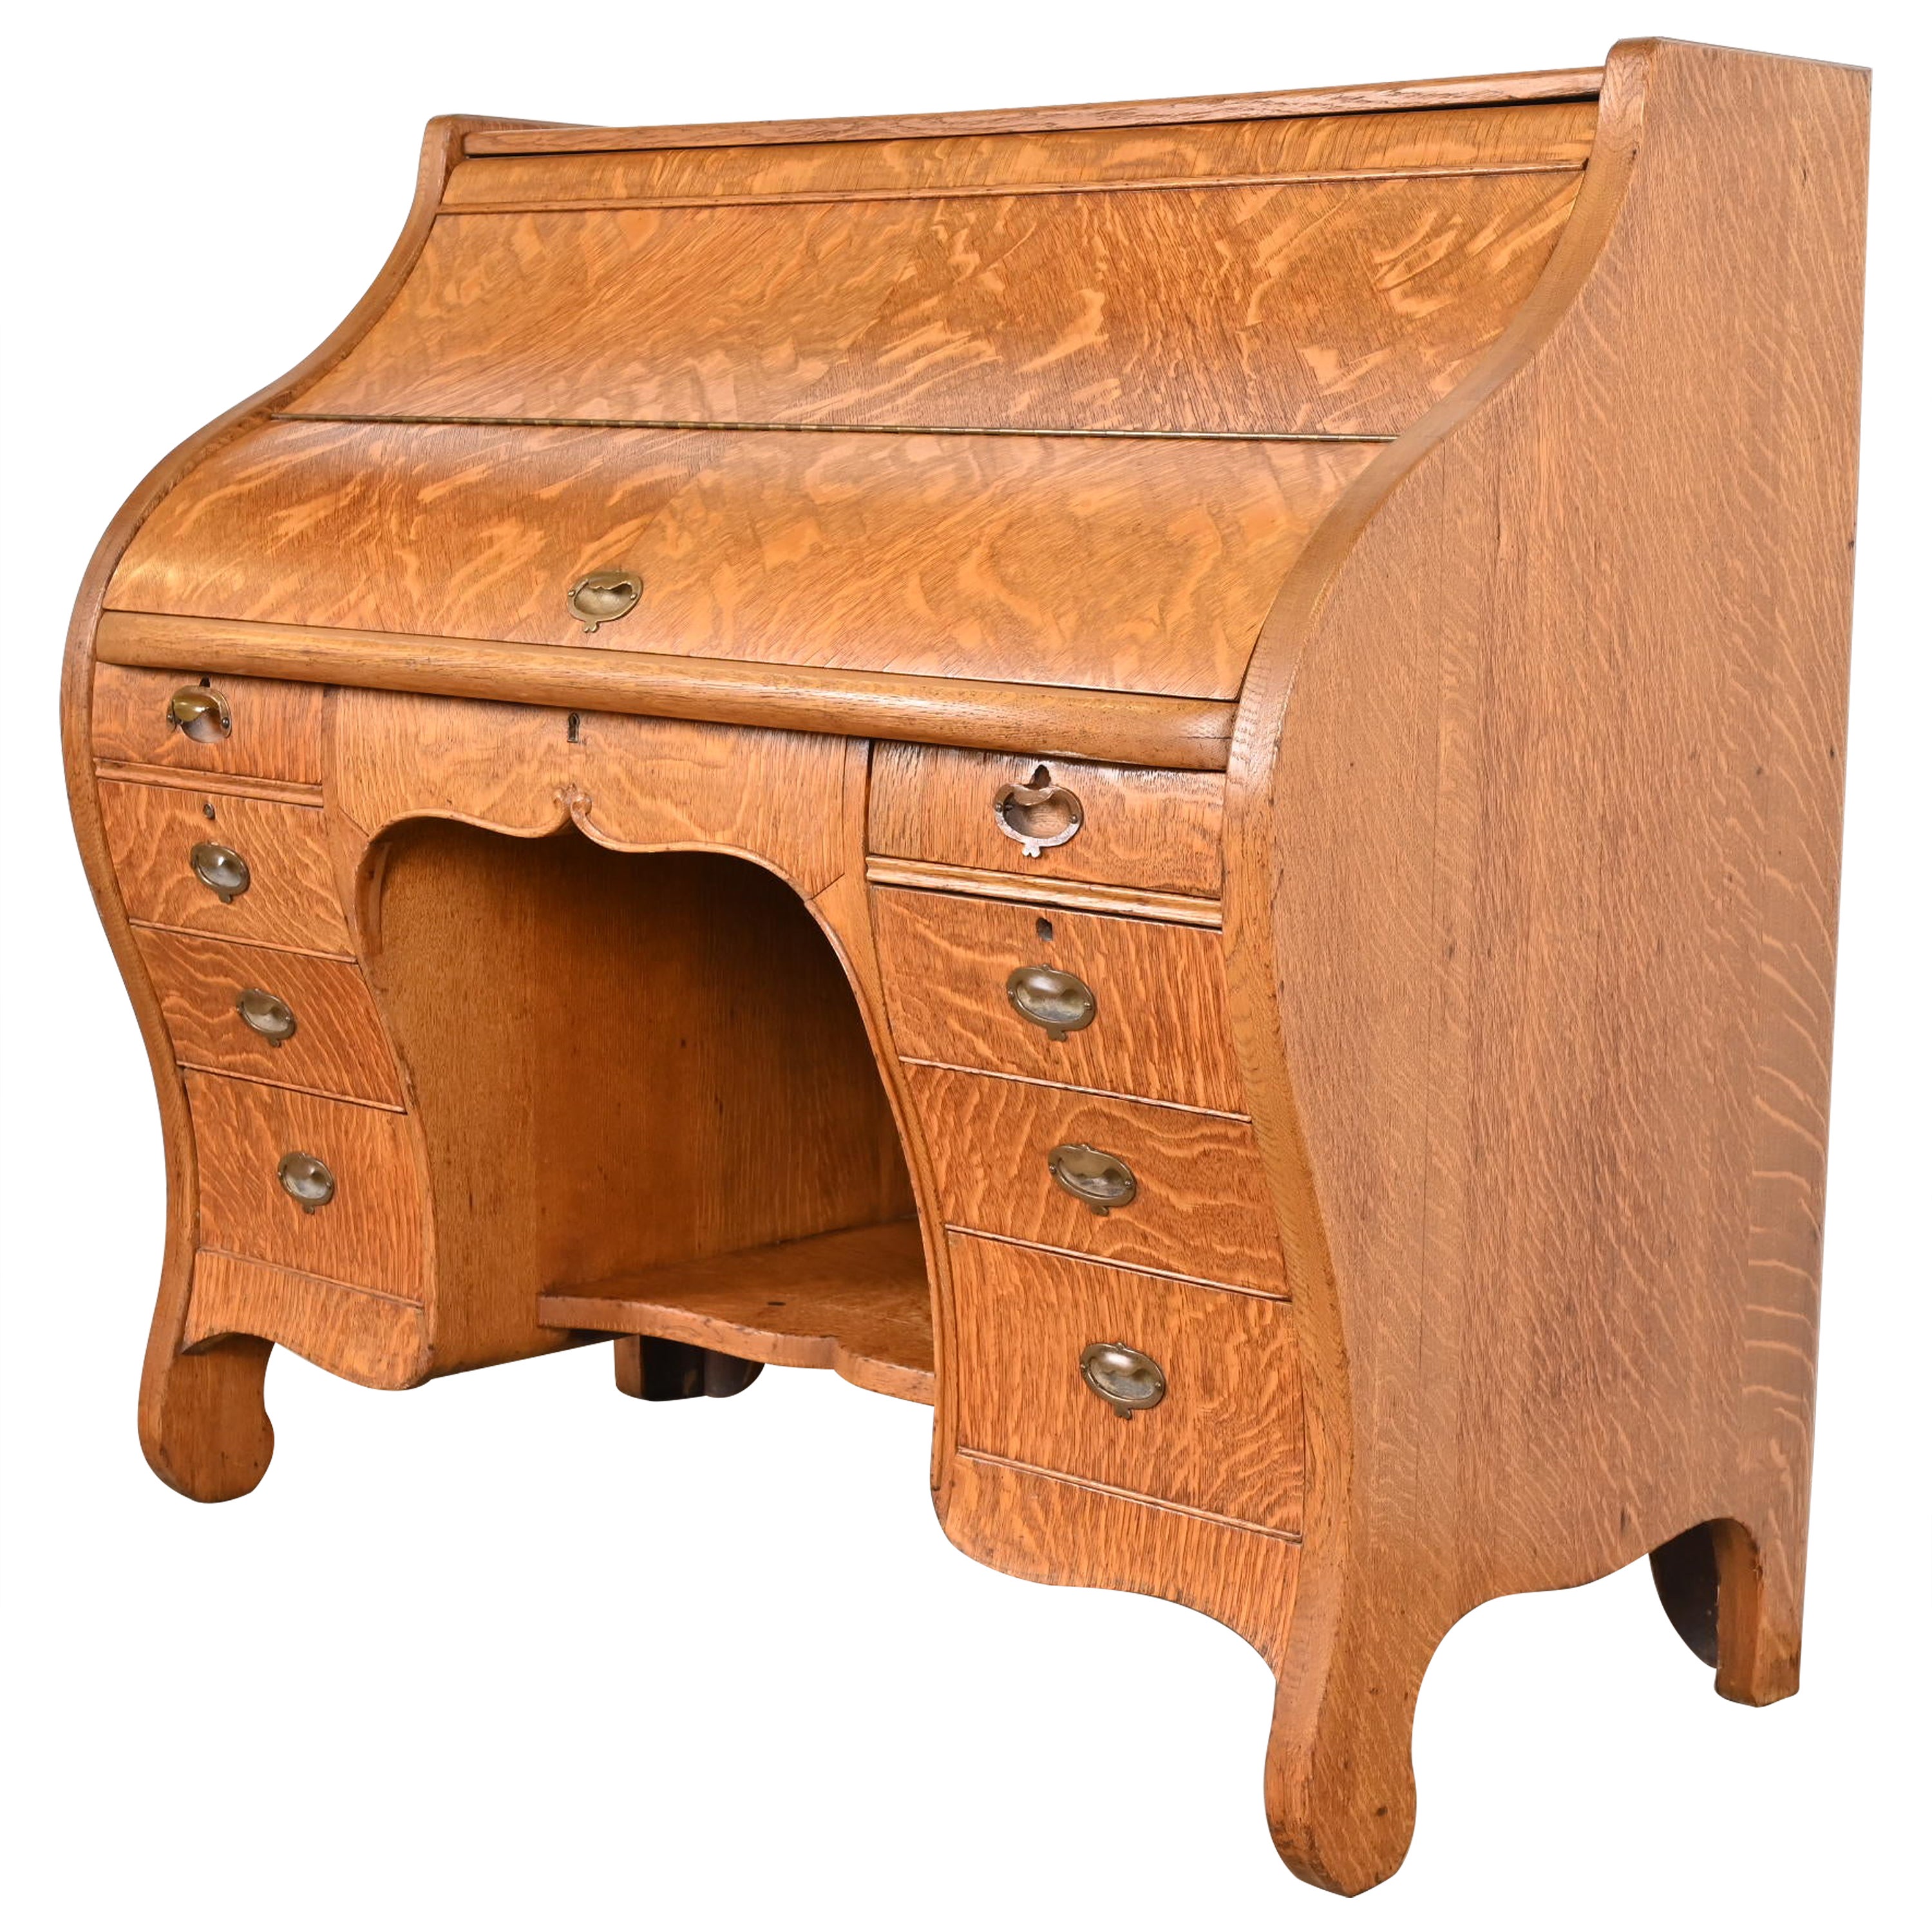 Antique American Arts & Crafts Oak Roll Top Desk, Circa 1890s